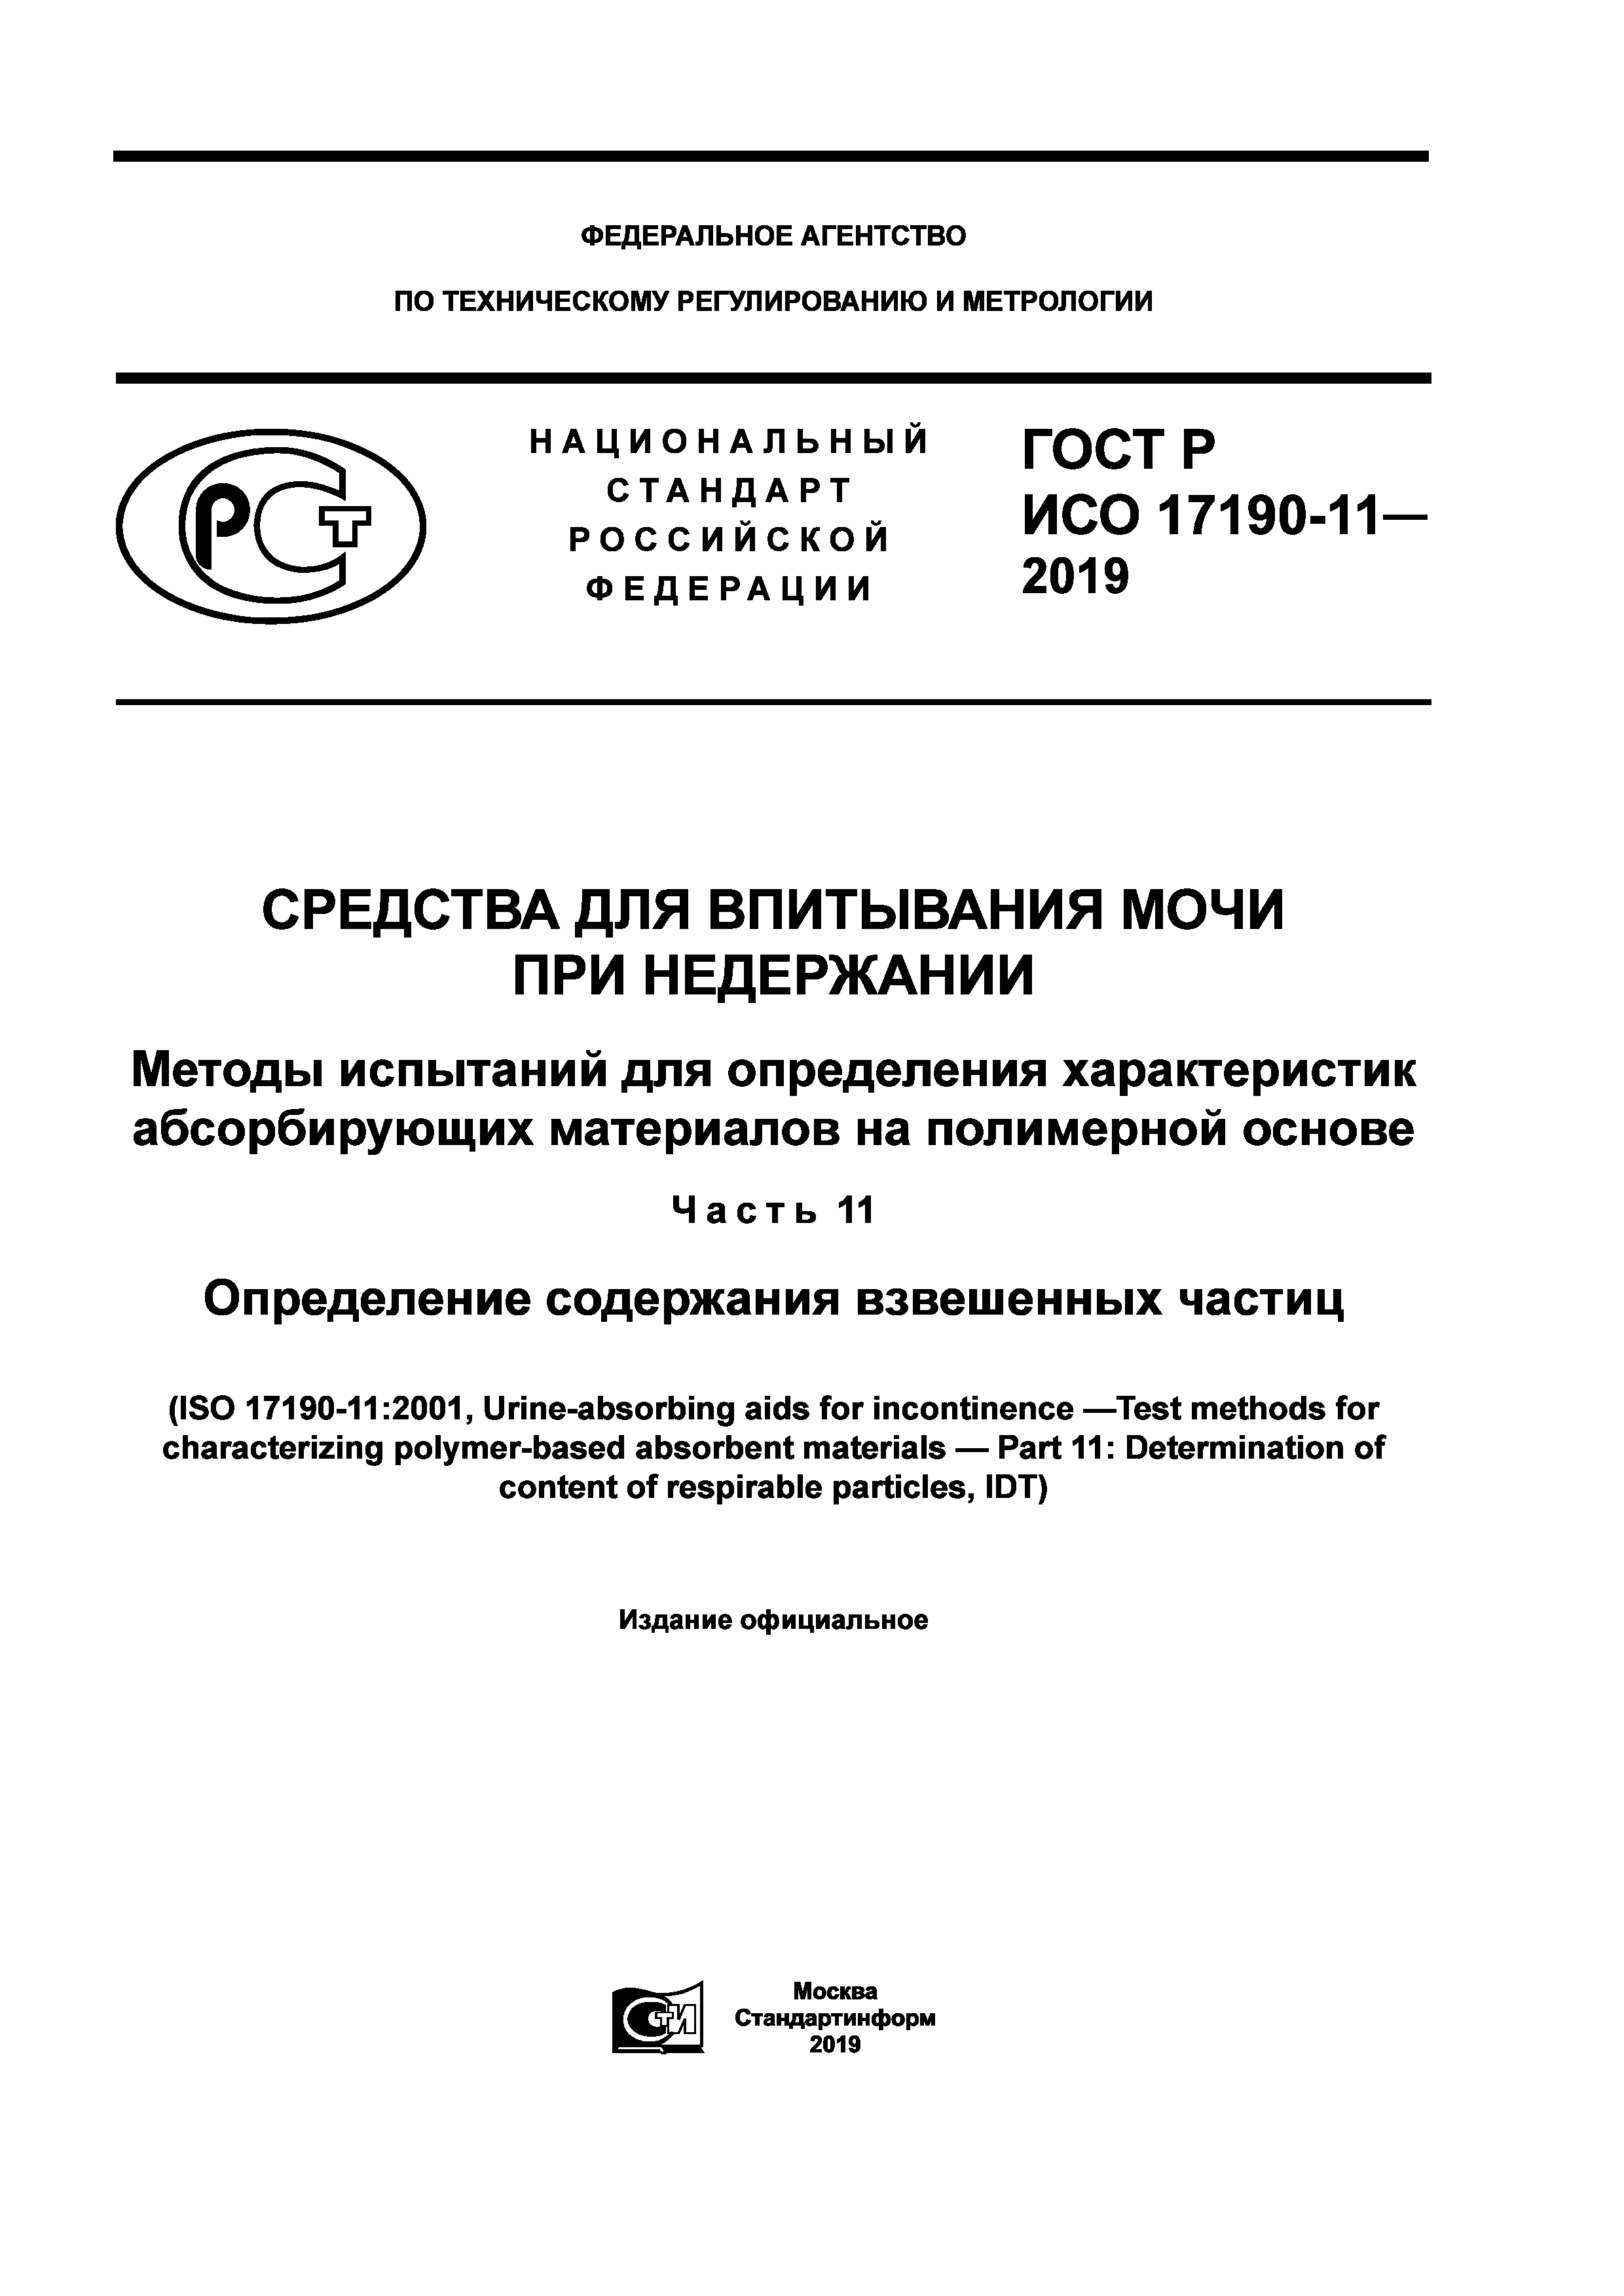 ГОСТ Р ИСО 17190-11-2019